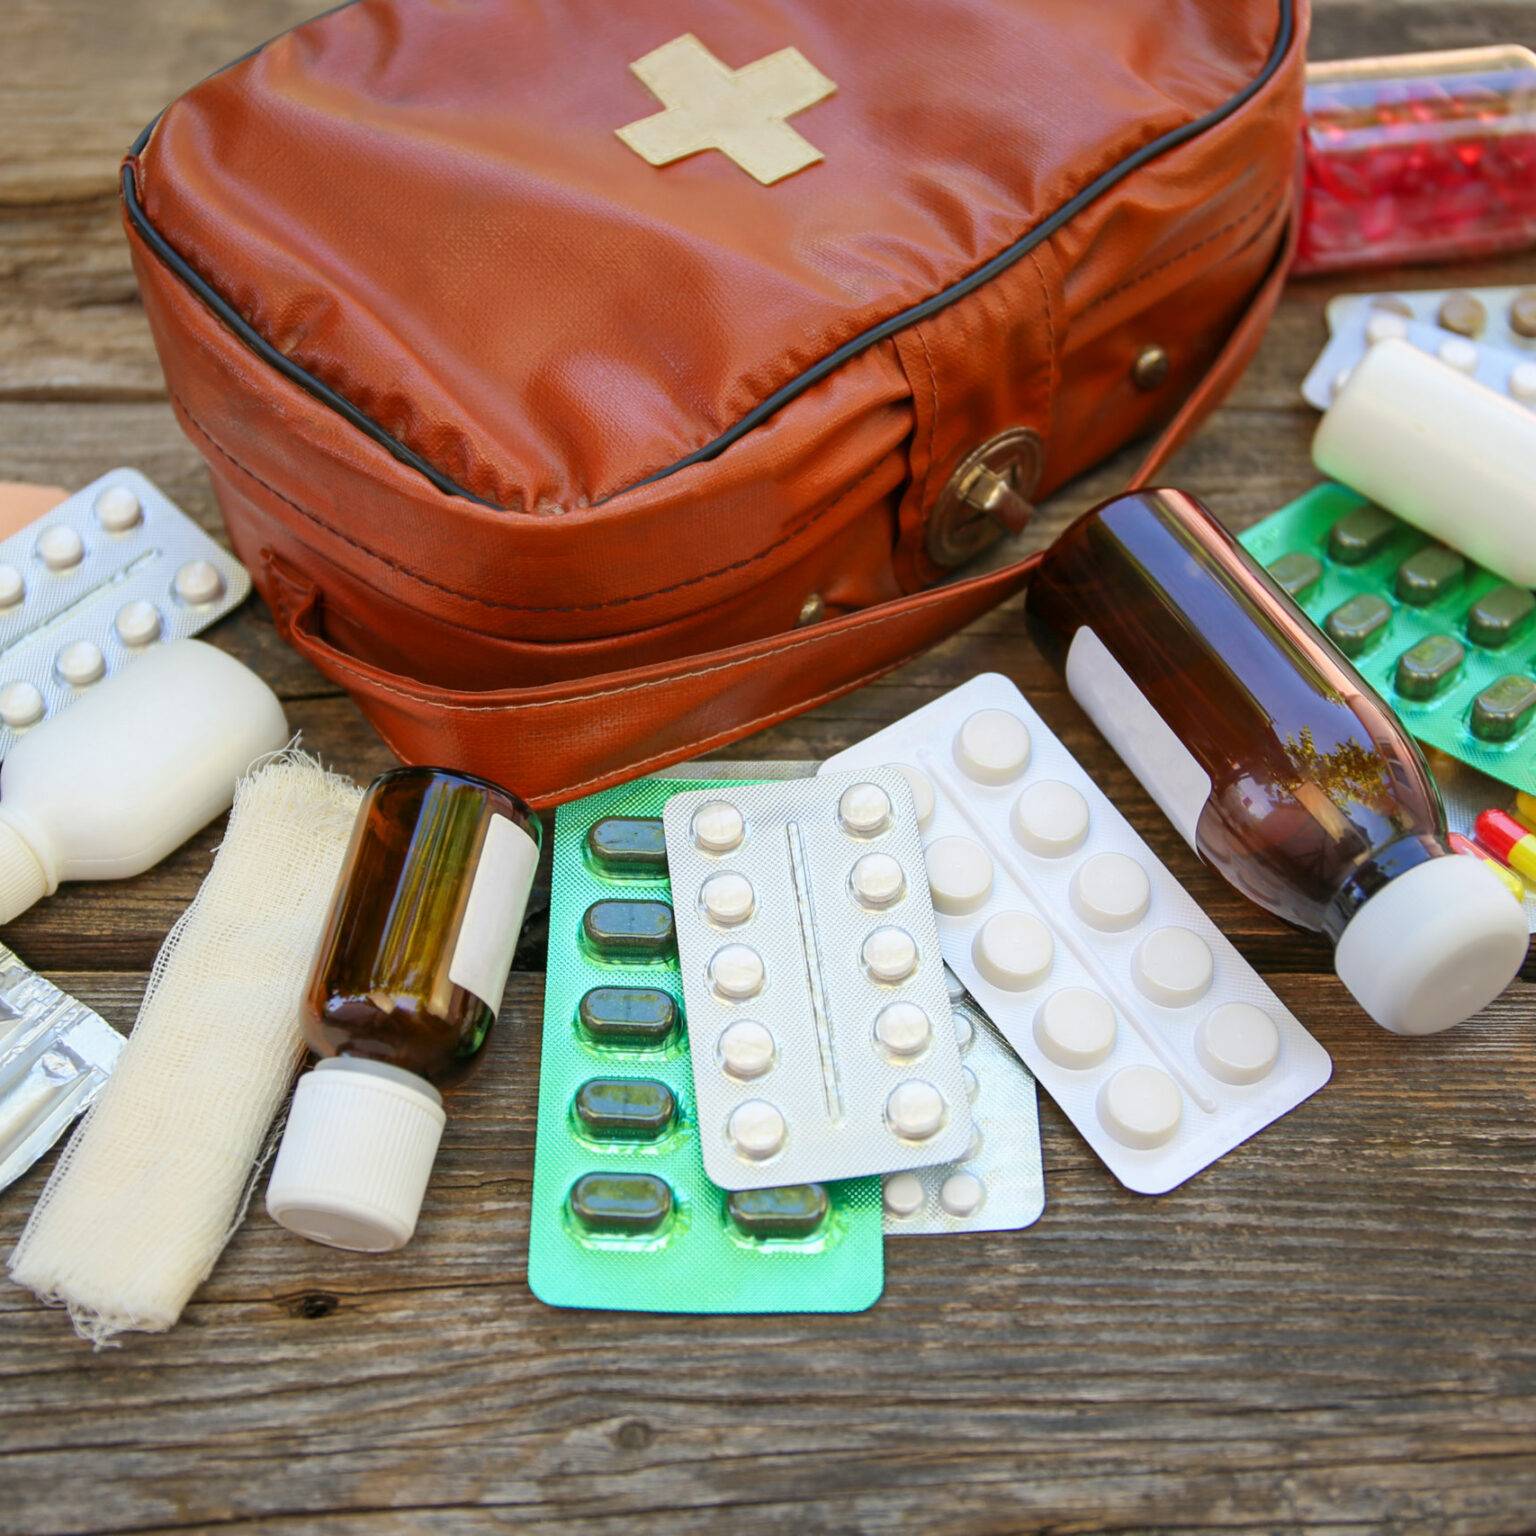 Eine Reiseapotheke in Form einer Erste-Hilfe-Tasche liegt auf Holz, davor liegen Tabletten, Zäpfchen, Medikamentenflaschen und Verbandszeug.